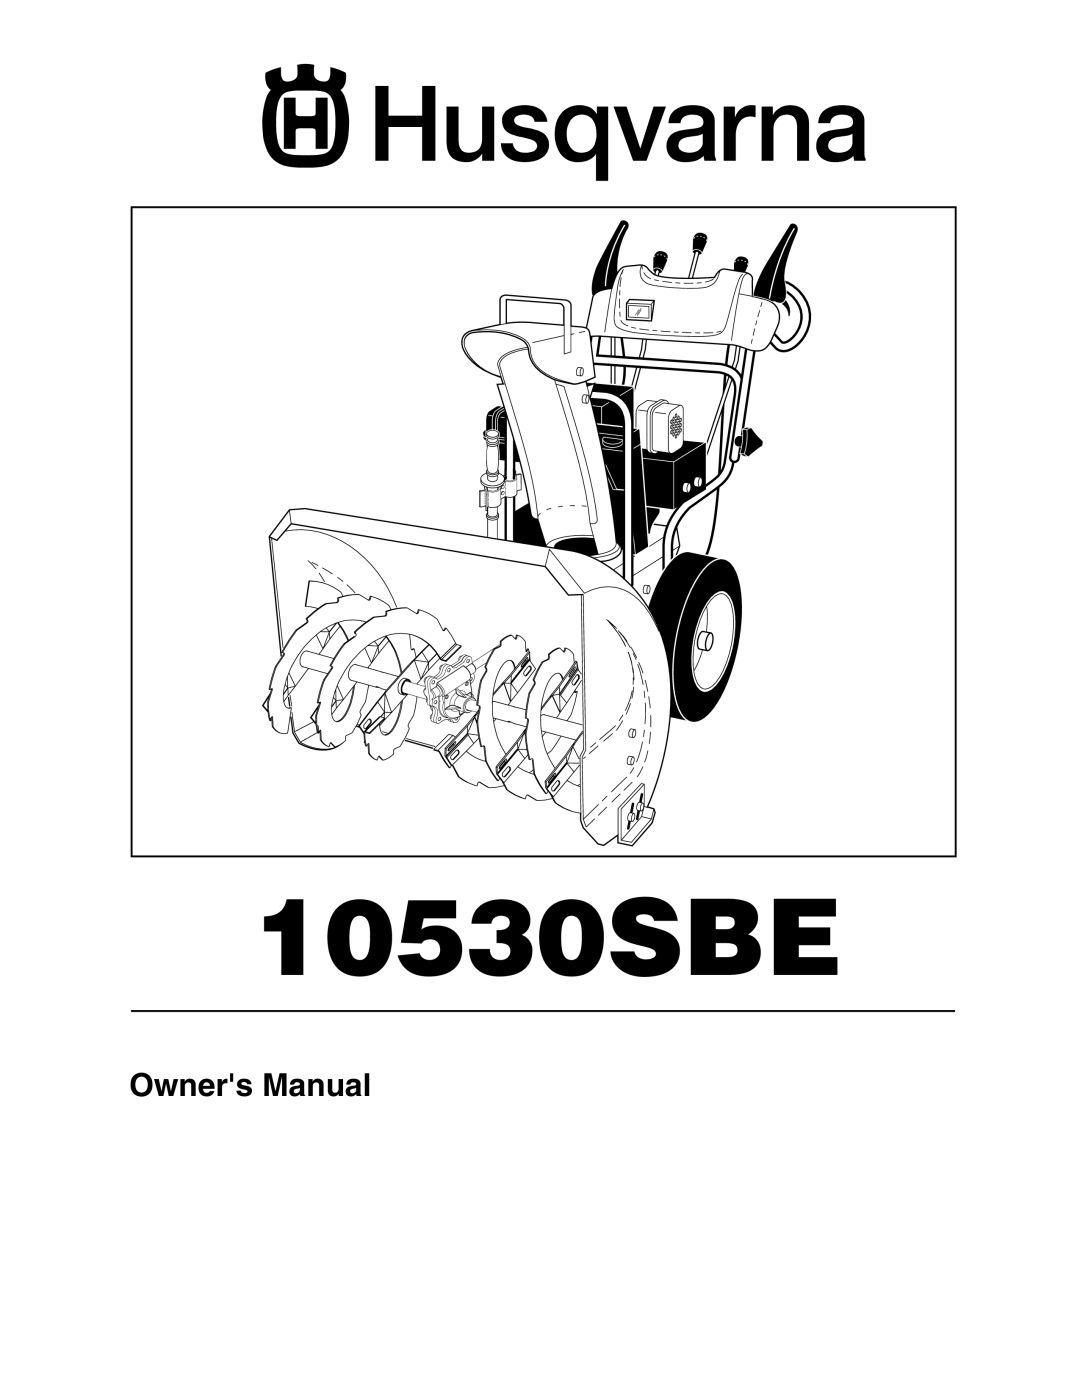 Husqvarna 10530SBE owner manual 